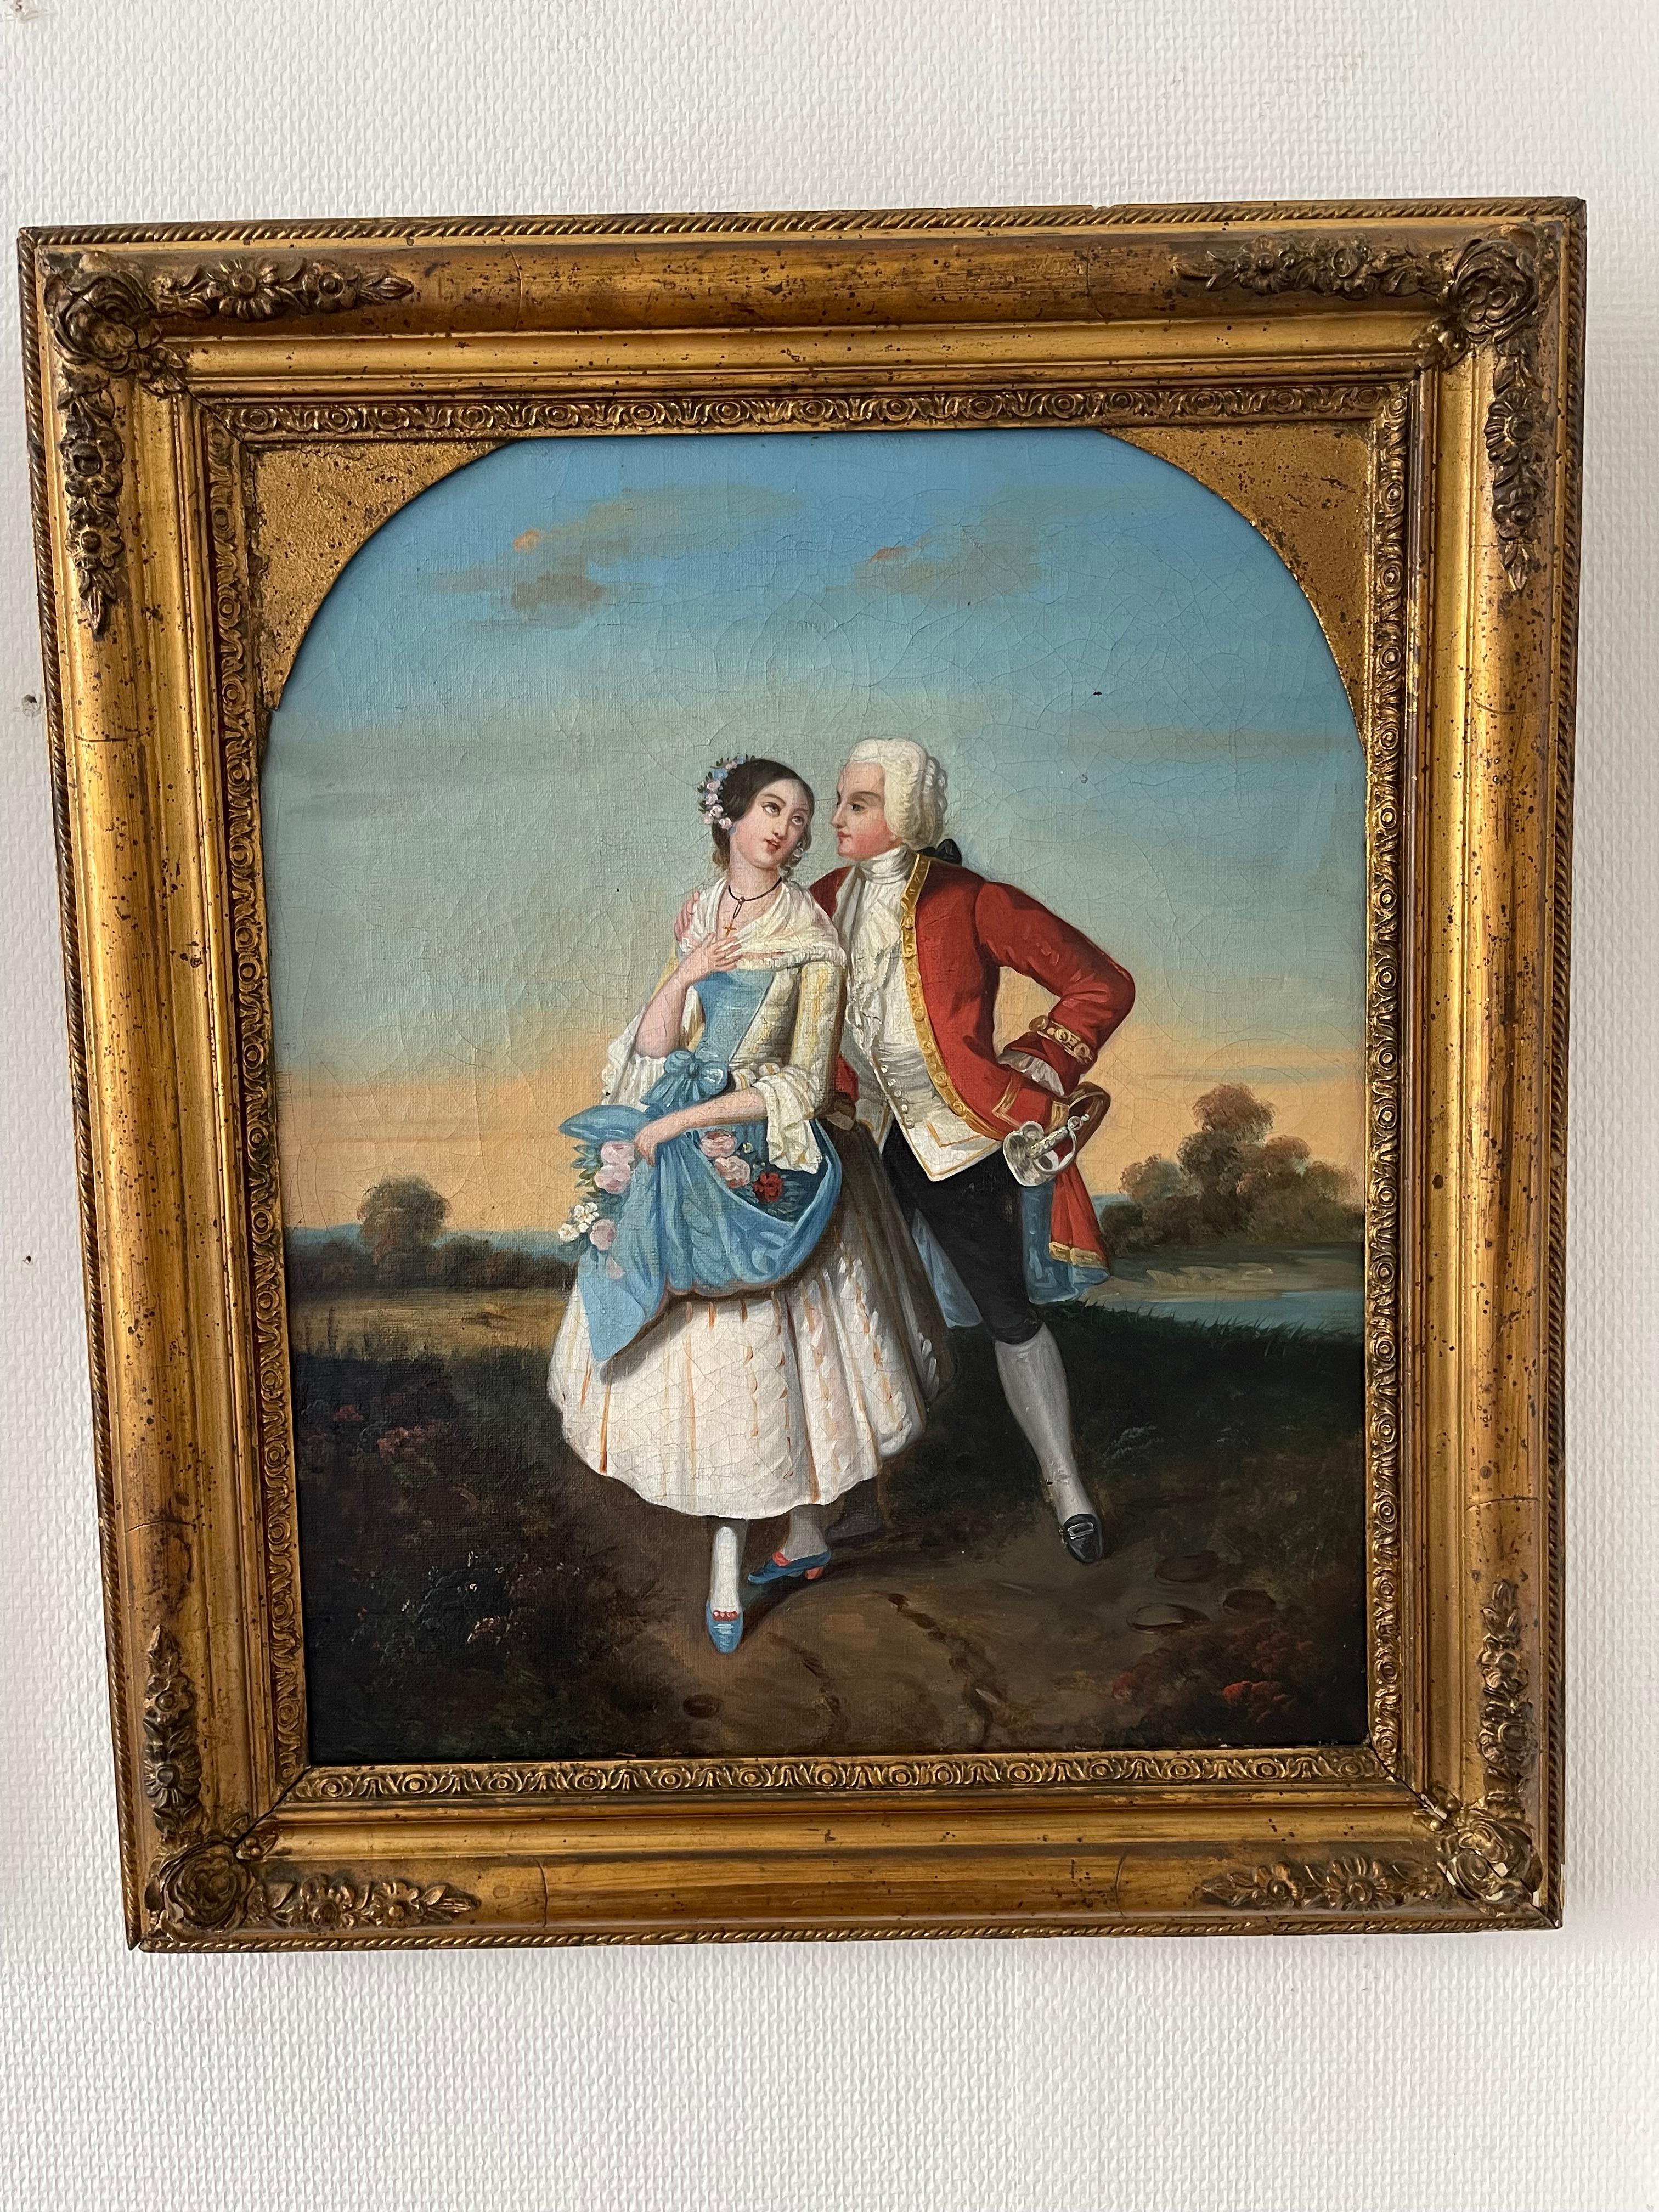 Diese beiden Gemälde bilden ein künstlerisches Paar, das typische Liebesszenen aus dem 19. Das erste Gemälde zeigt zwei junge Menschen, die in zeitgenössischen Kostümen stehen. In den Blicken, die die beiden austauschen, ist eine spürbare Spannung